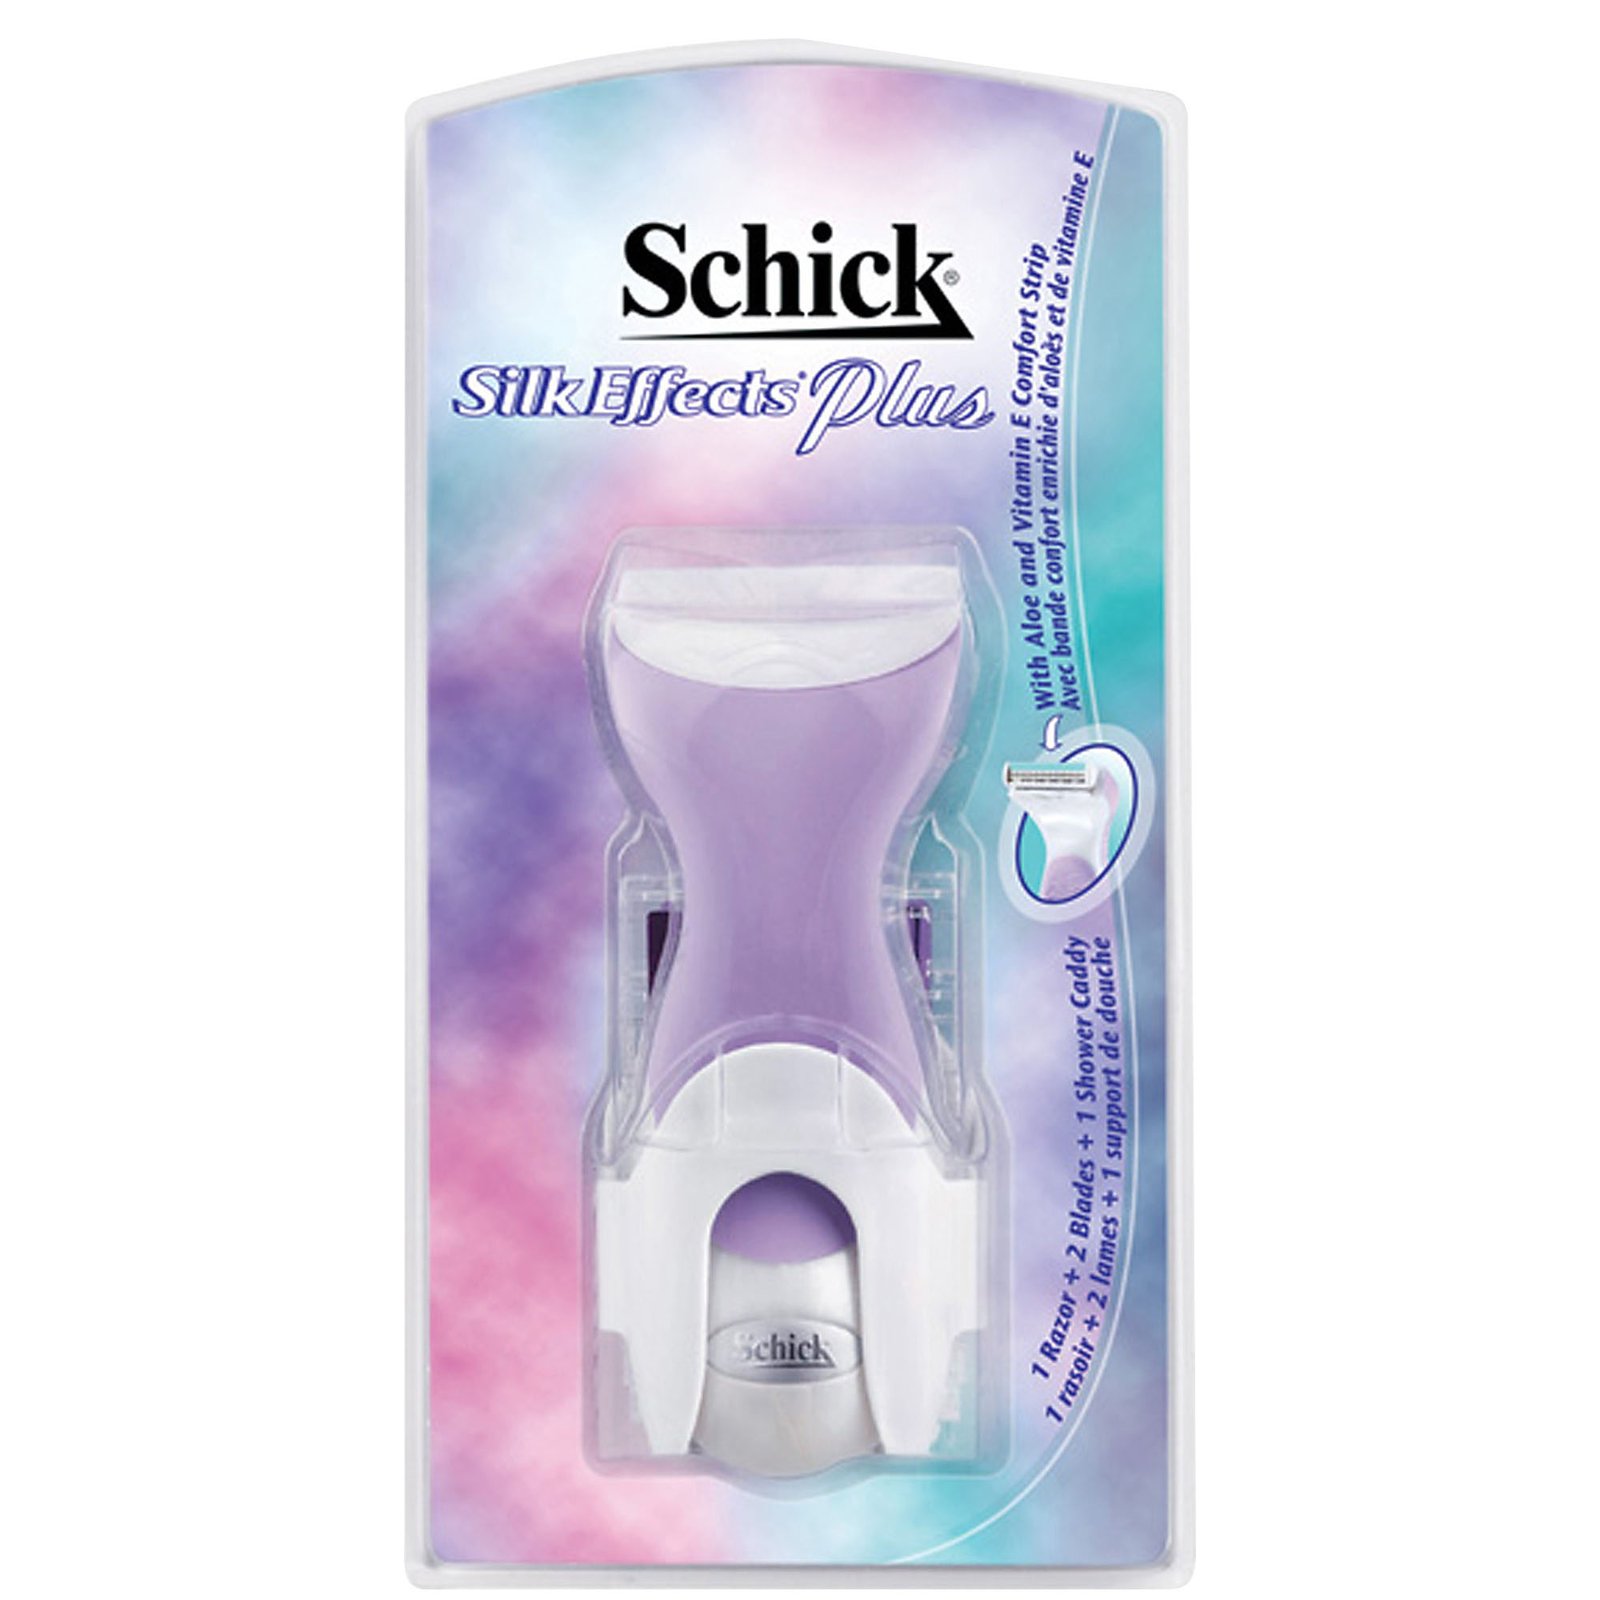 Schick Silk Effects Razor